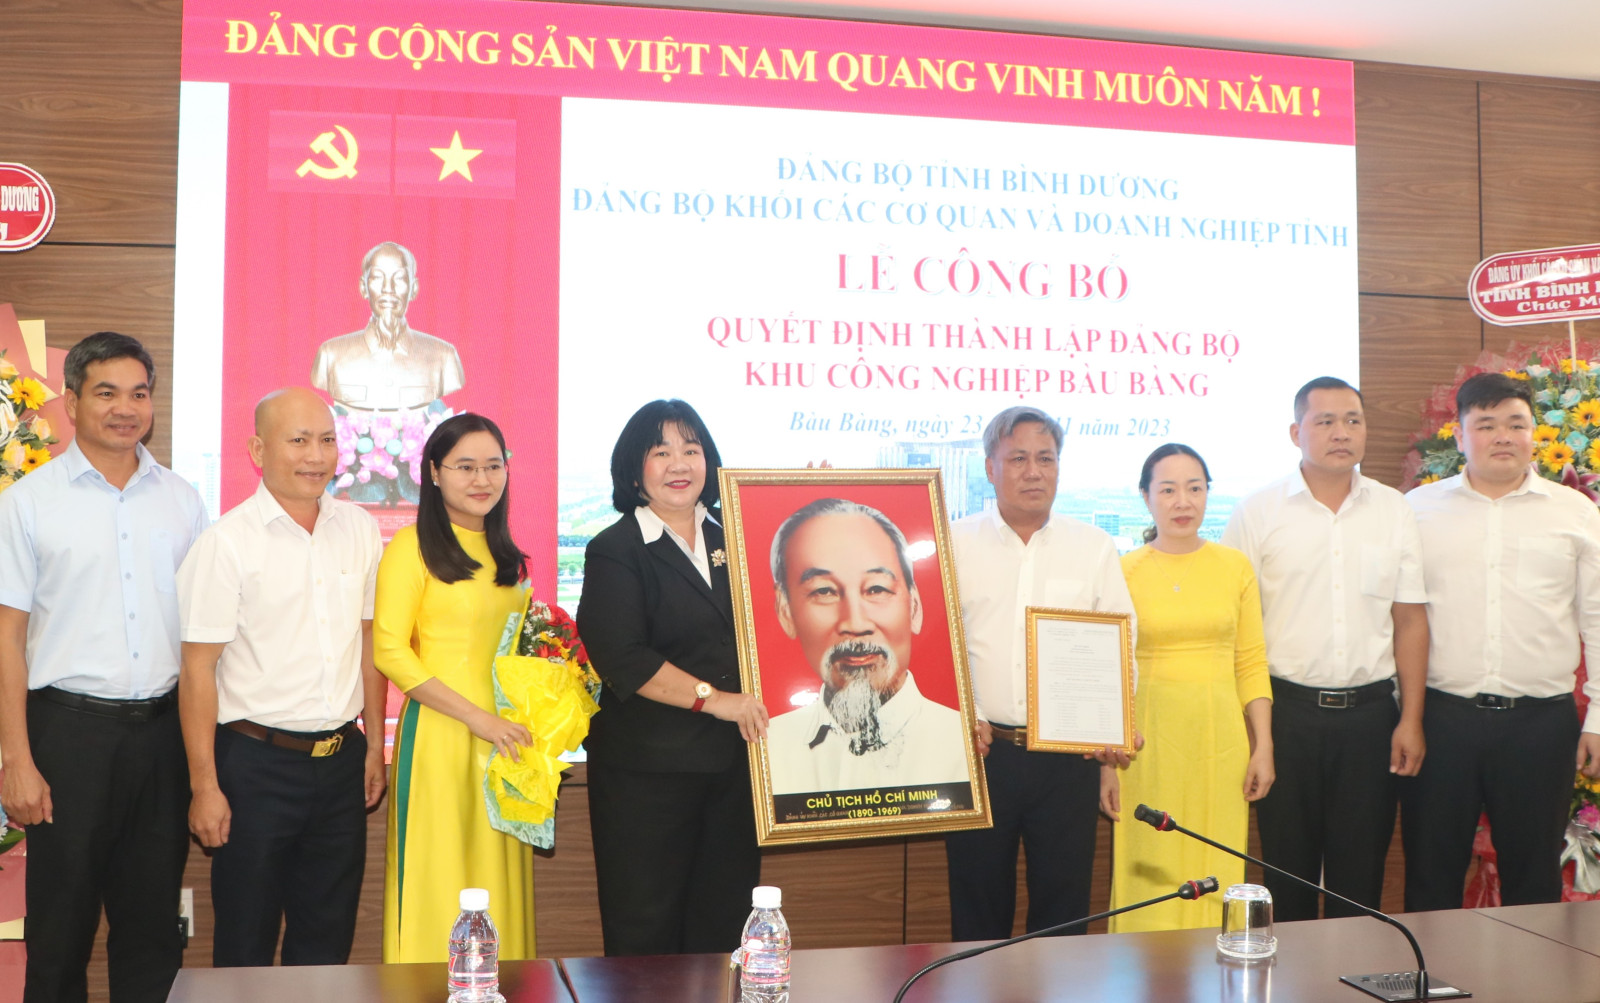 Đồng chí Nguyễn Thị Xuân Mai trao quyết định thành lập và tặng ảnh Bác cho Đảng bộ cơ sở KCN Bàu Bàng.